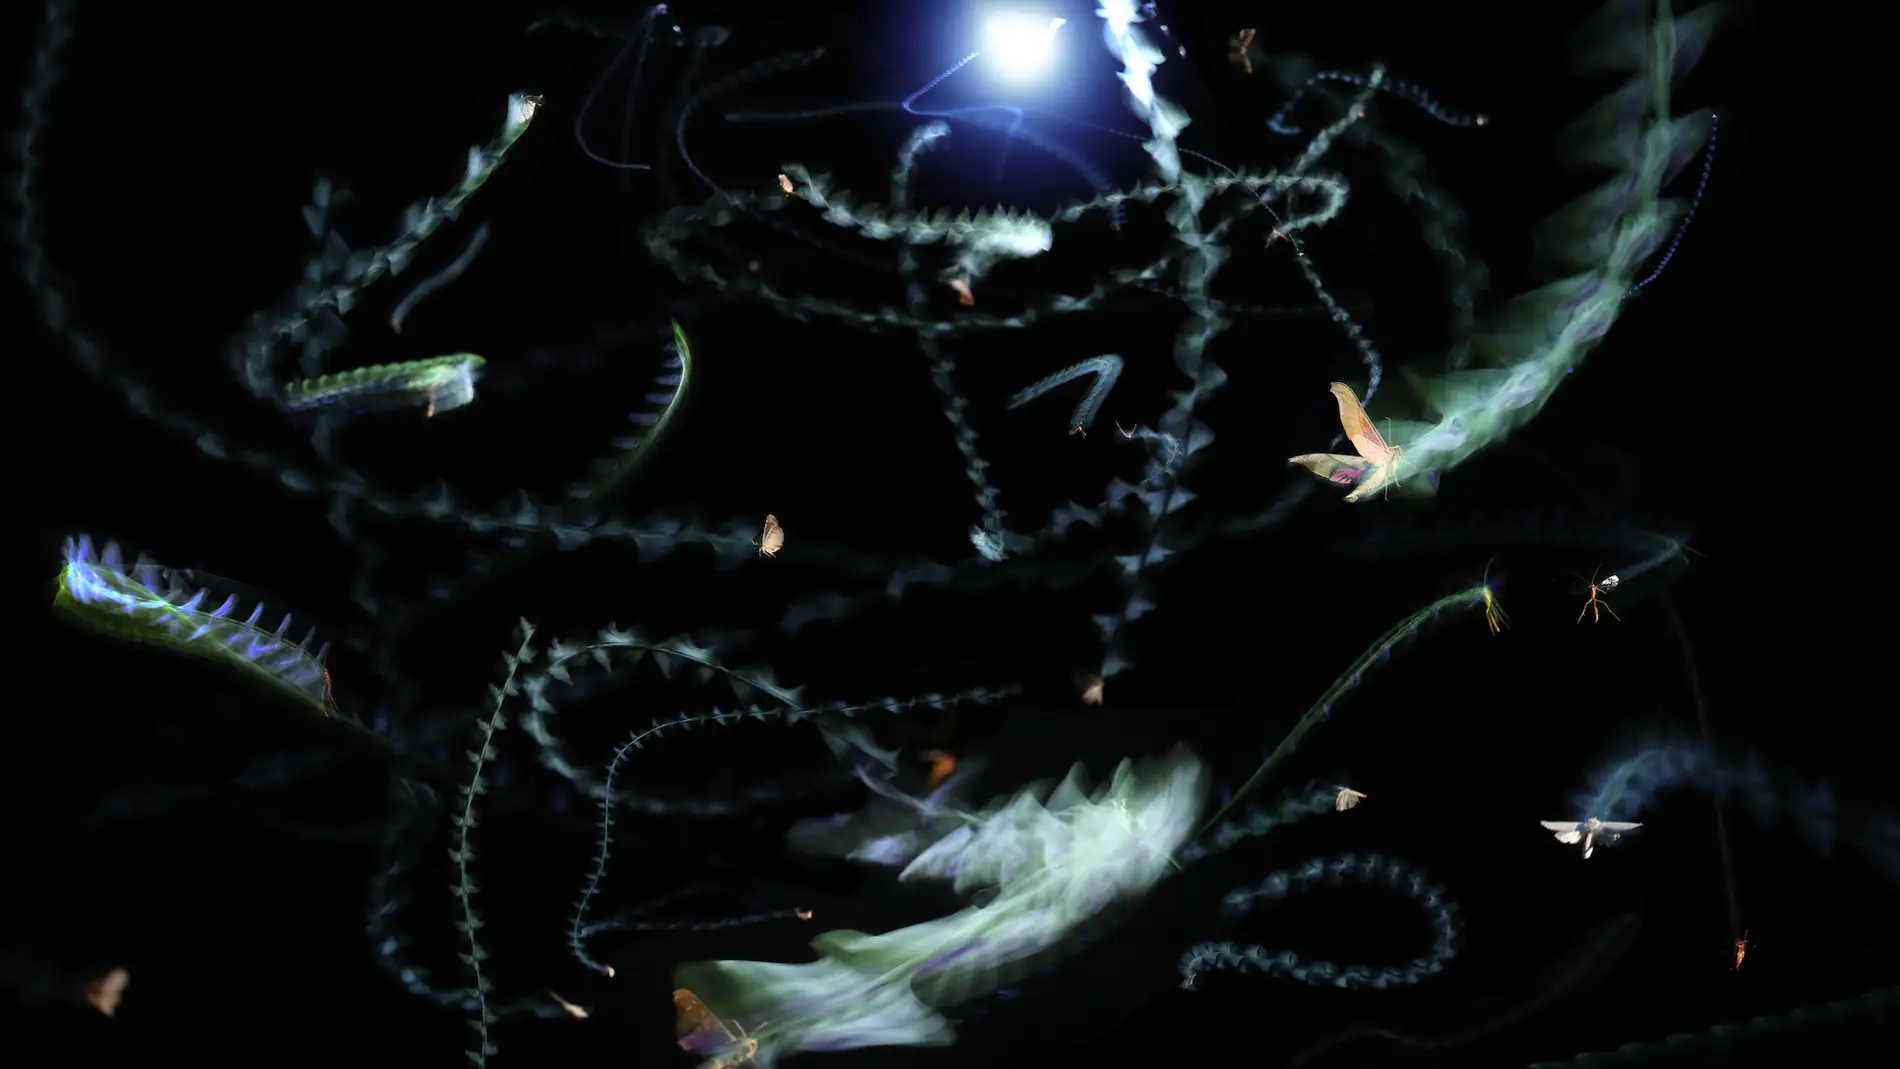 Fotografía de exposición múltiple de insectos que revolotean en torno a una luz por la noche. 